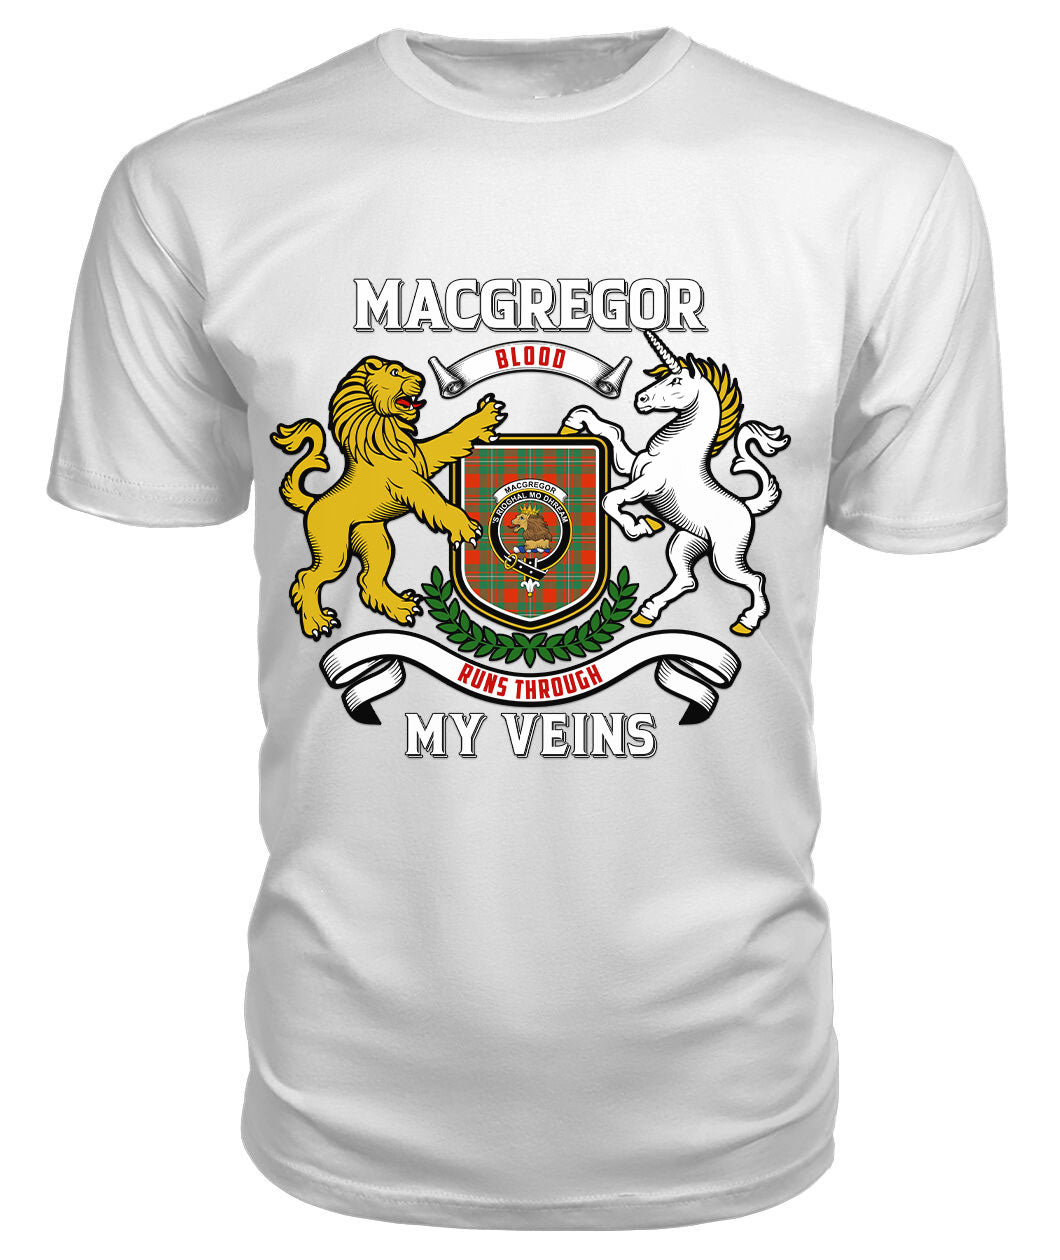 MacGregor Ancient Tartan Crest 2D T-shirt - Blood Runs Through My Veins Style